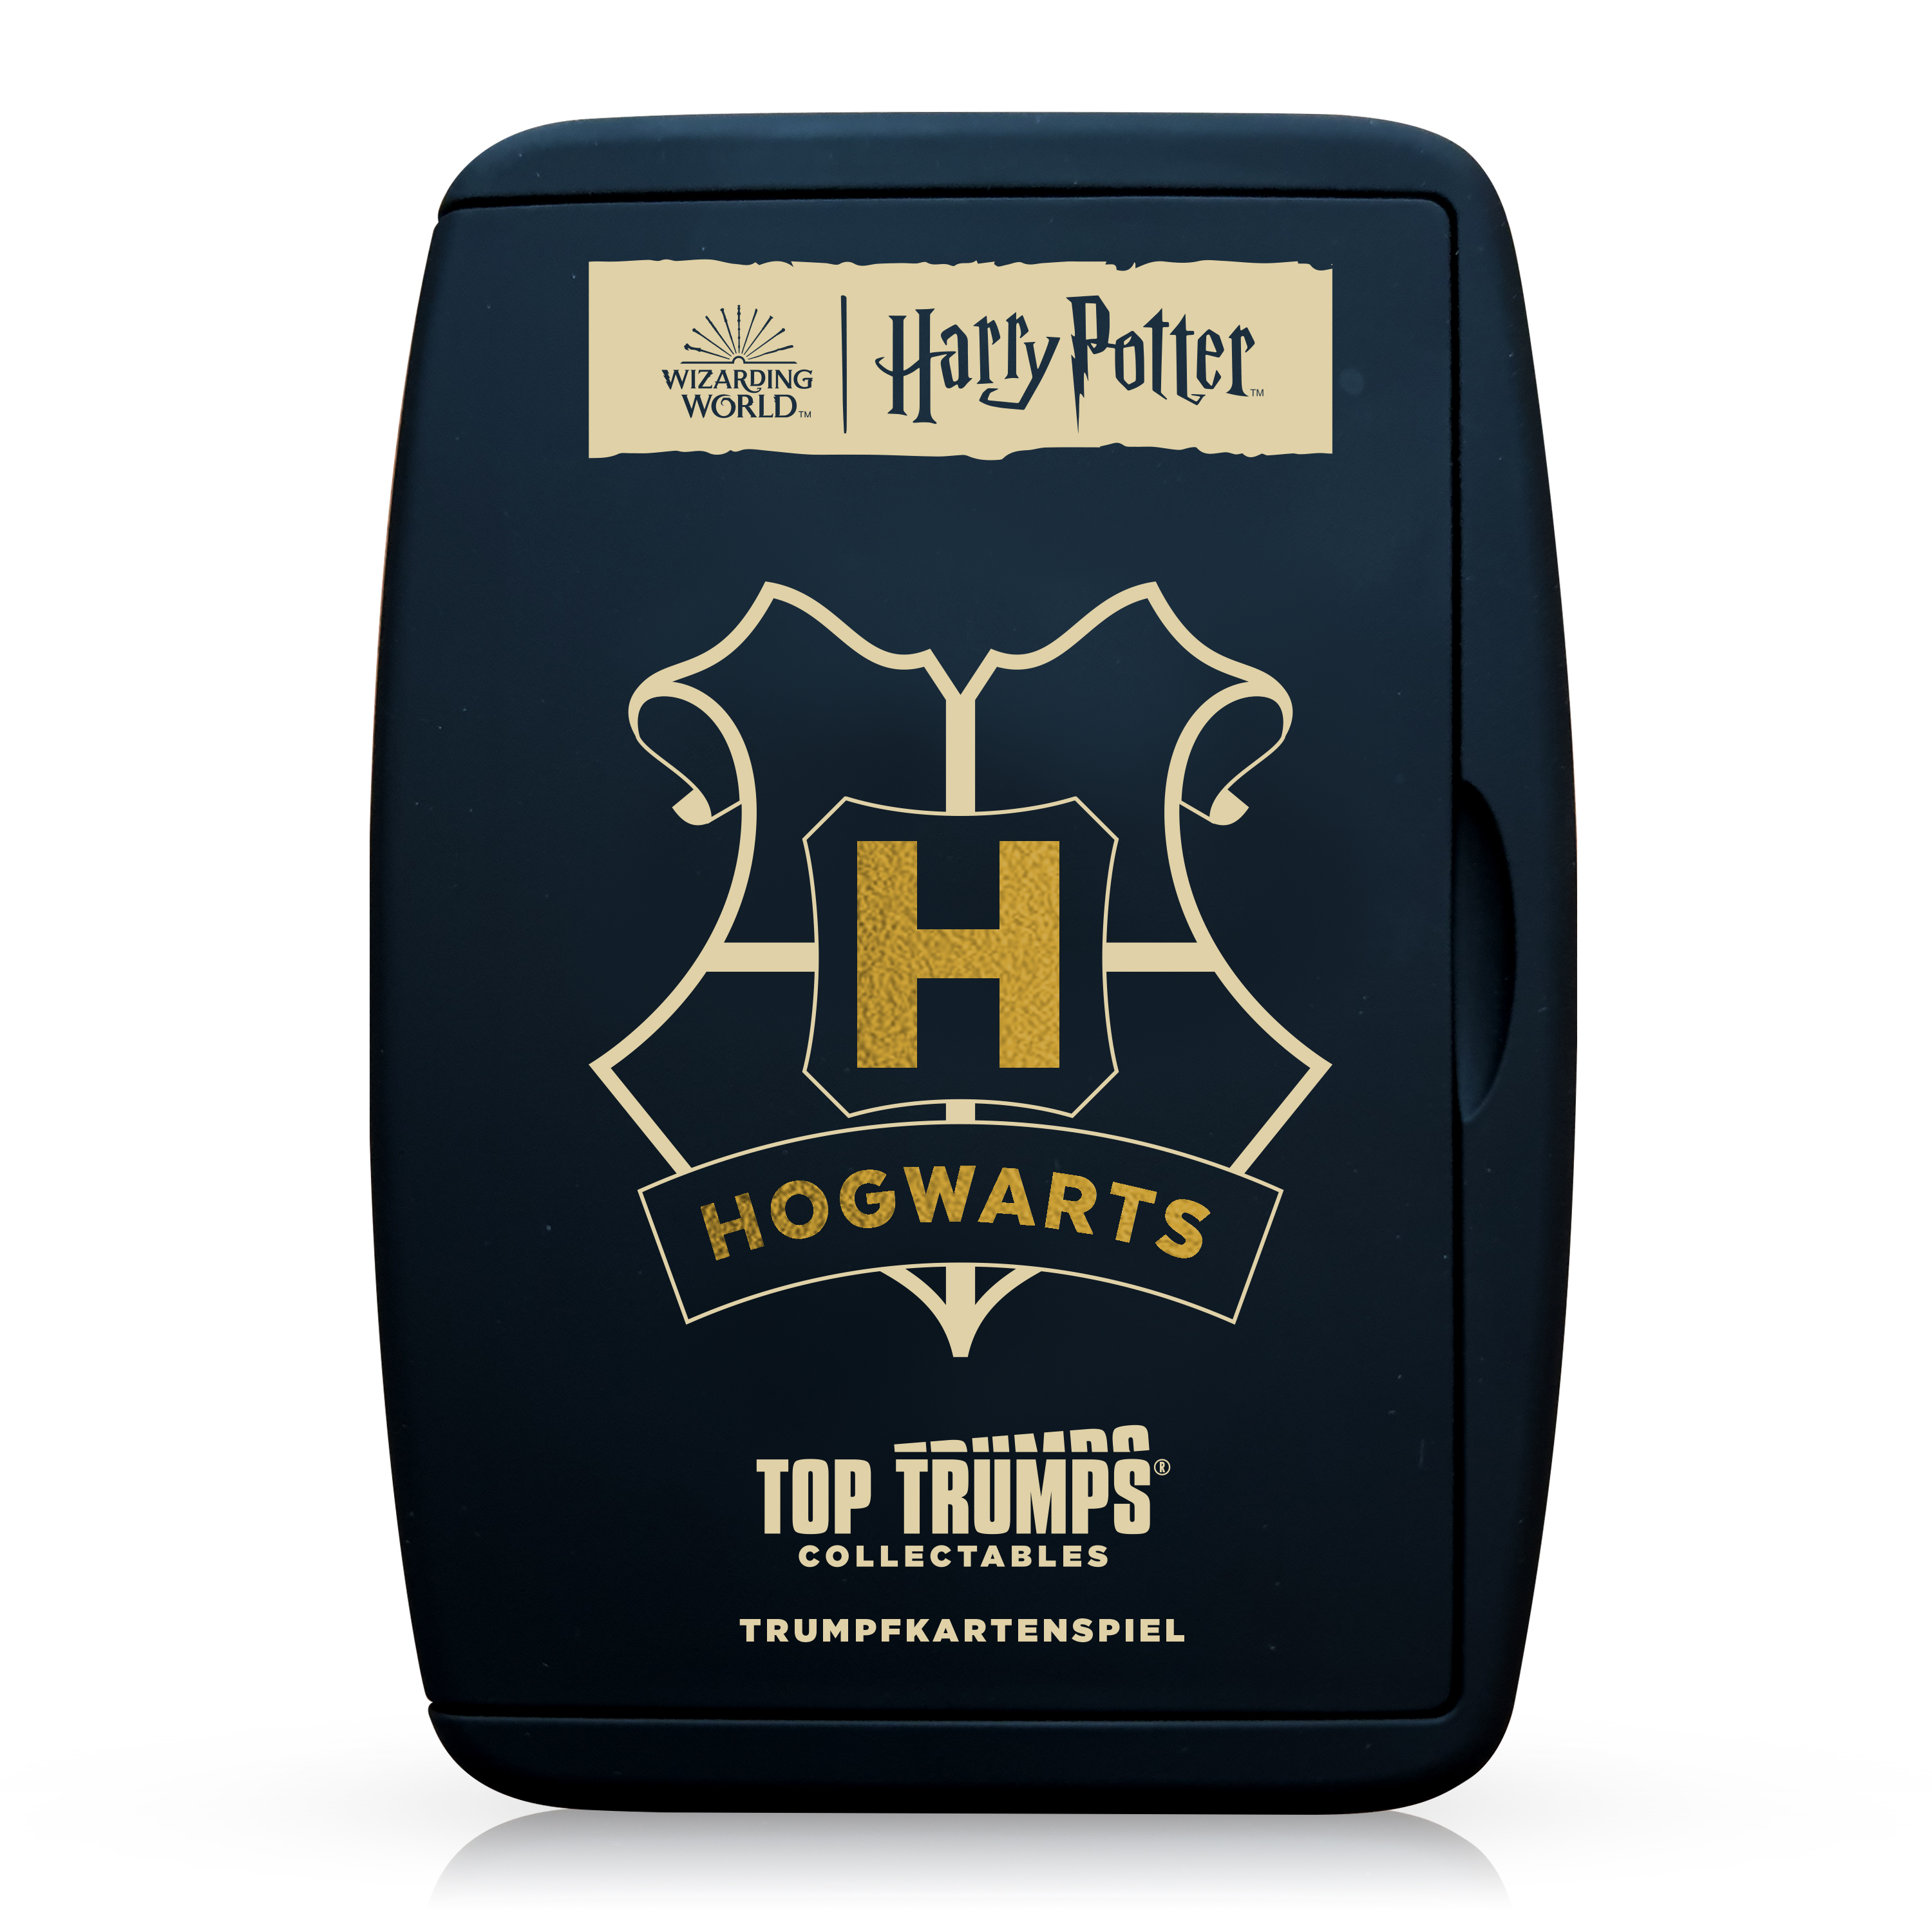 Top Trumps Collectables - Harry Potter Helden von Hogwarts